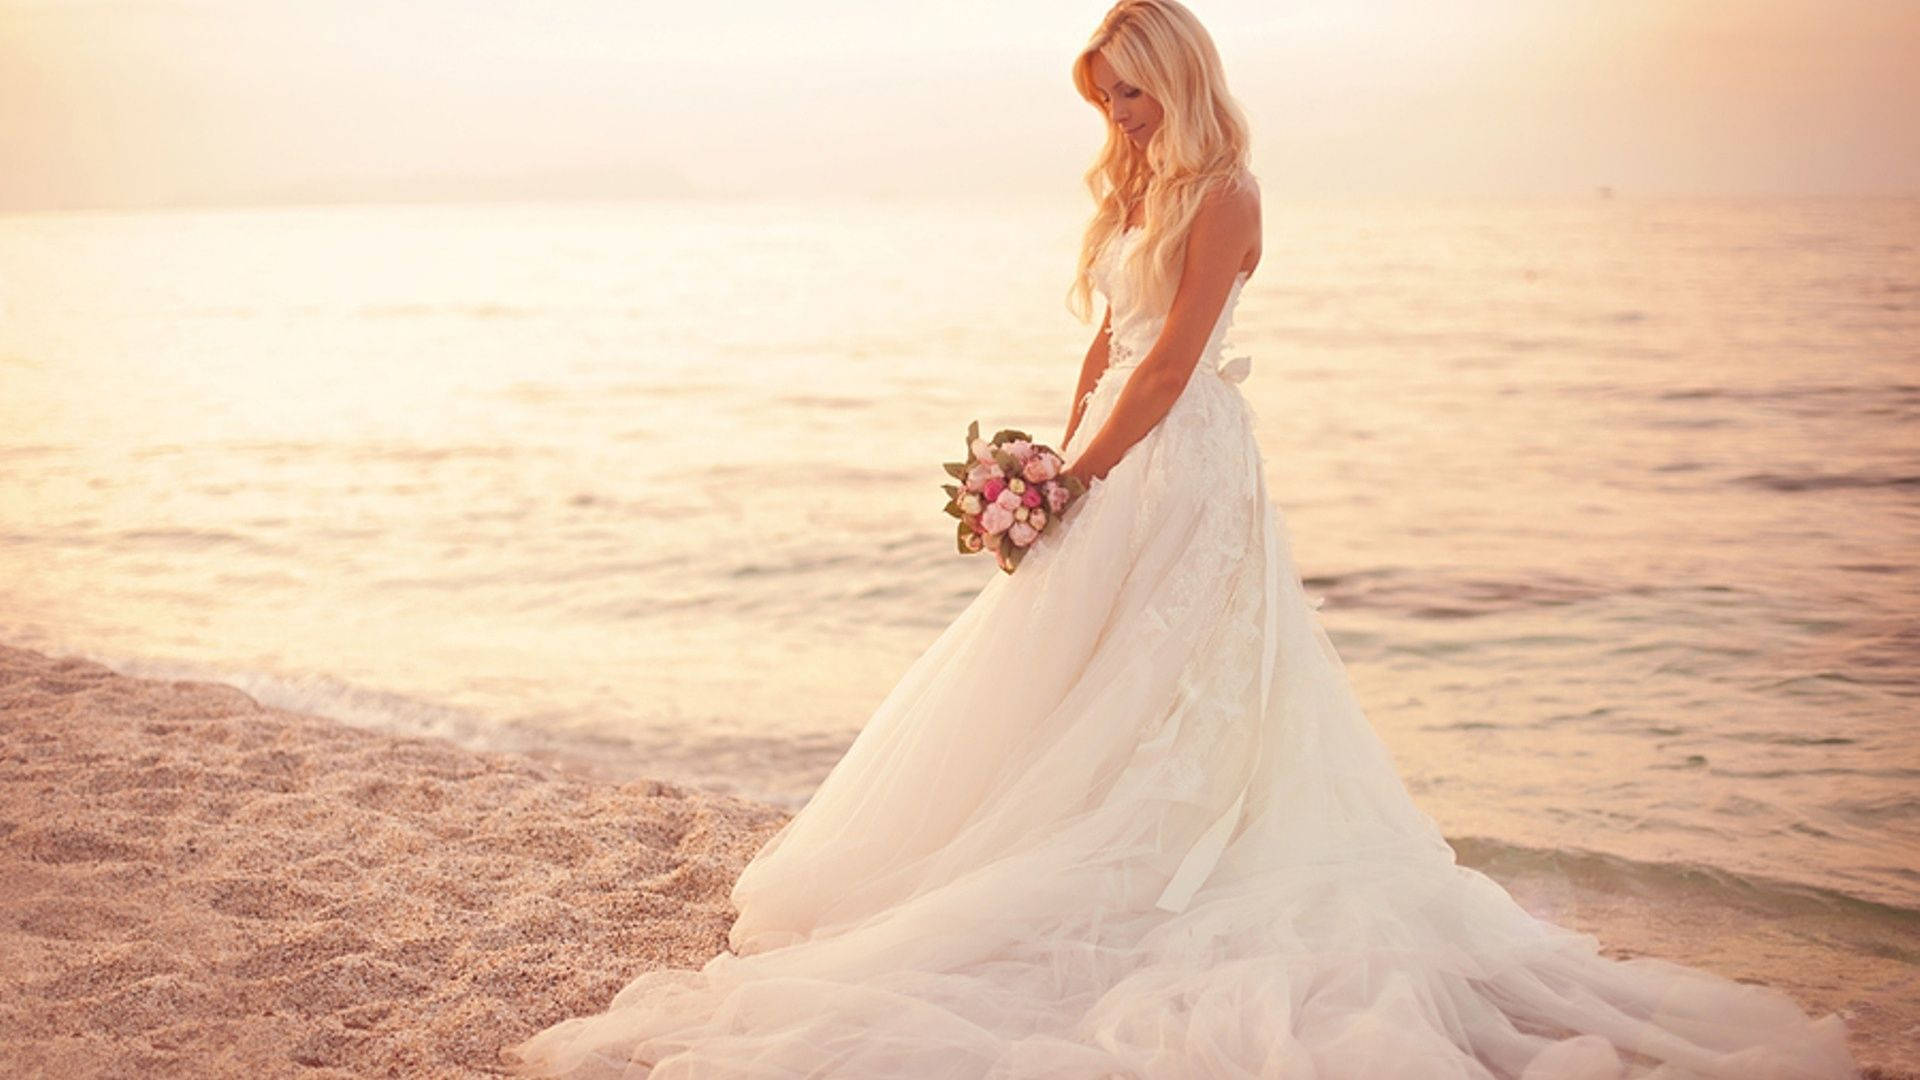 Bride On The Beach